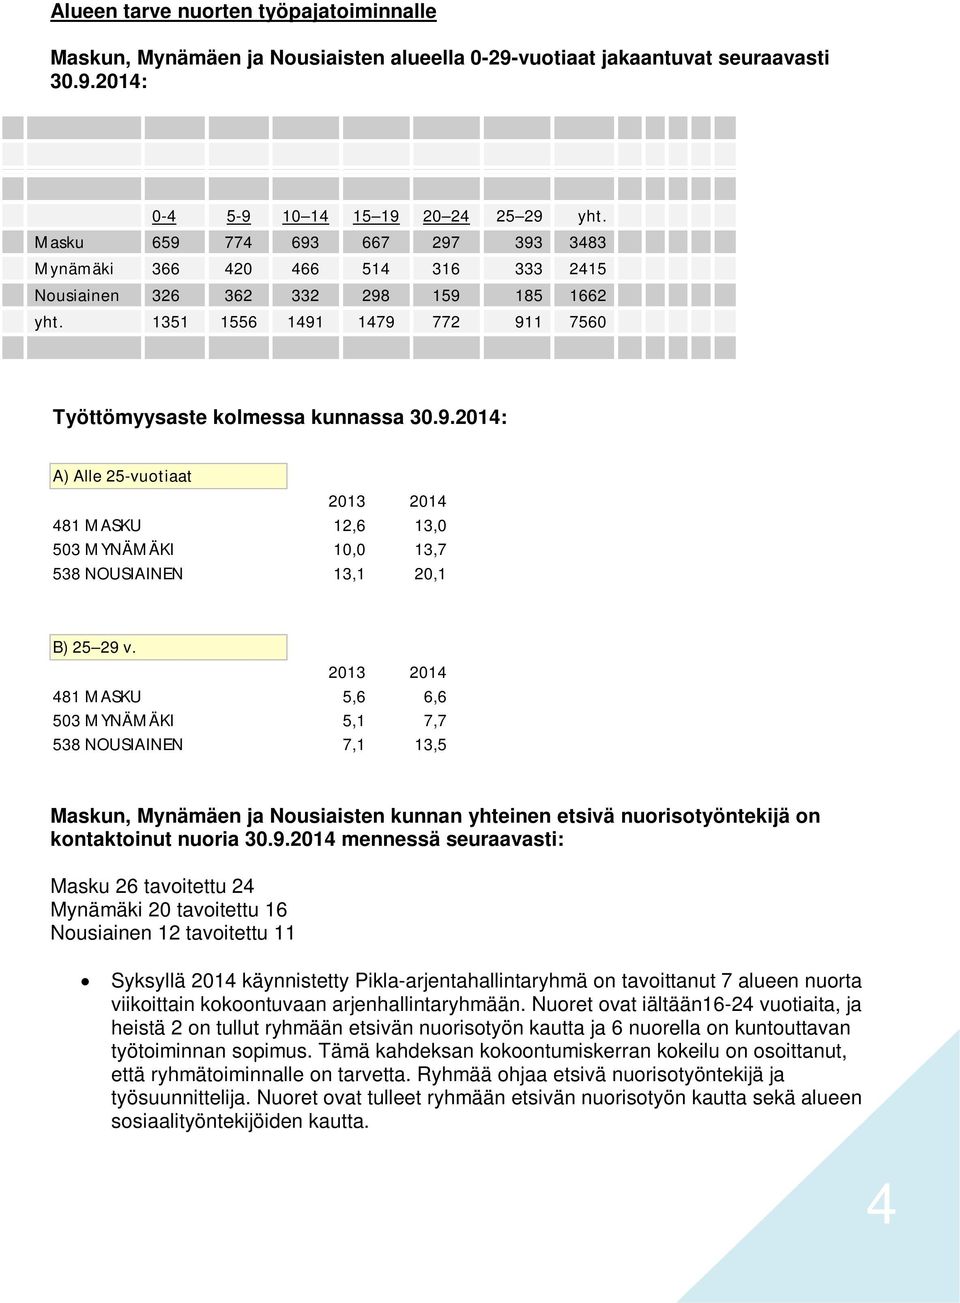 2013 2014 481 MASKU 5,6 6,6 503 MYNÄMÄKI 5,1 7,7 538 NOUSIAINEN 7,1 13,5 Maskun, Mynämäen ja Nousiaisten kunnan yhteinen etsivä nuorisotyöntekijä on kontaktoinut nuoria 30.9.